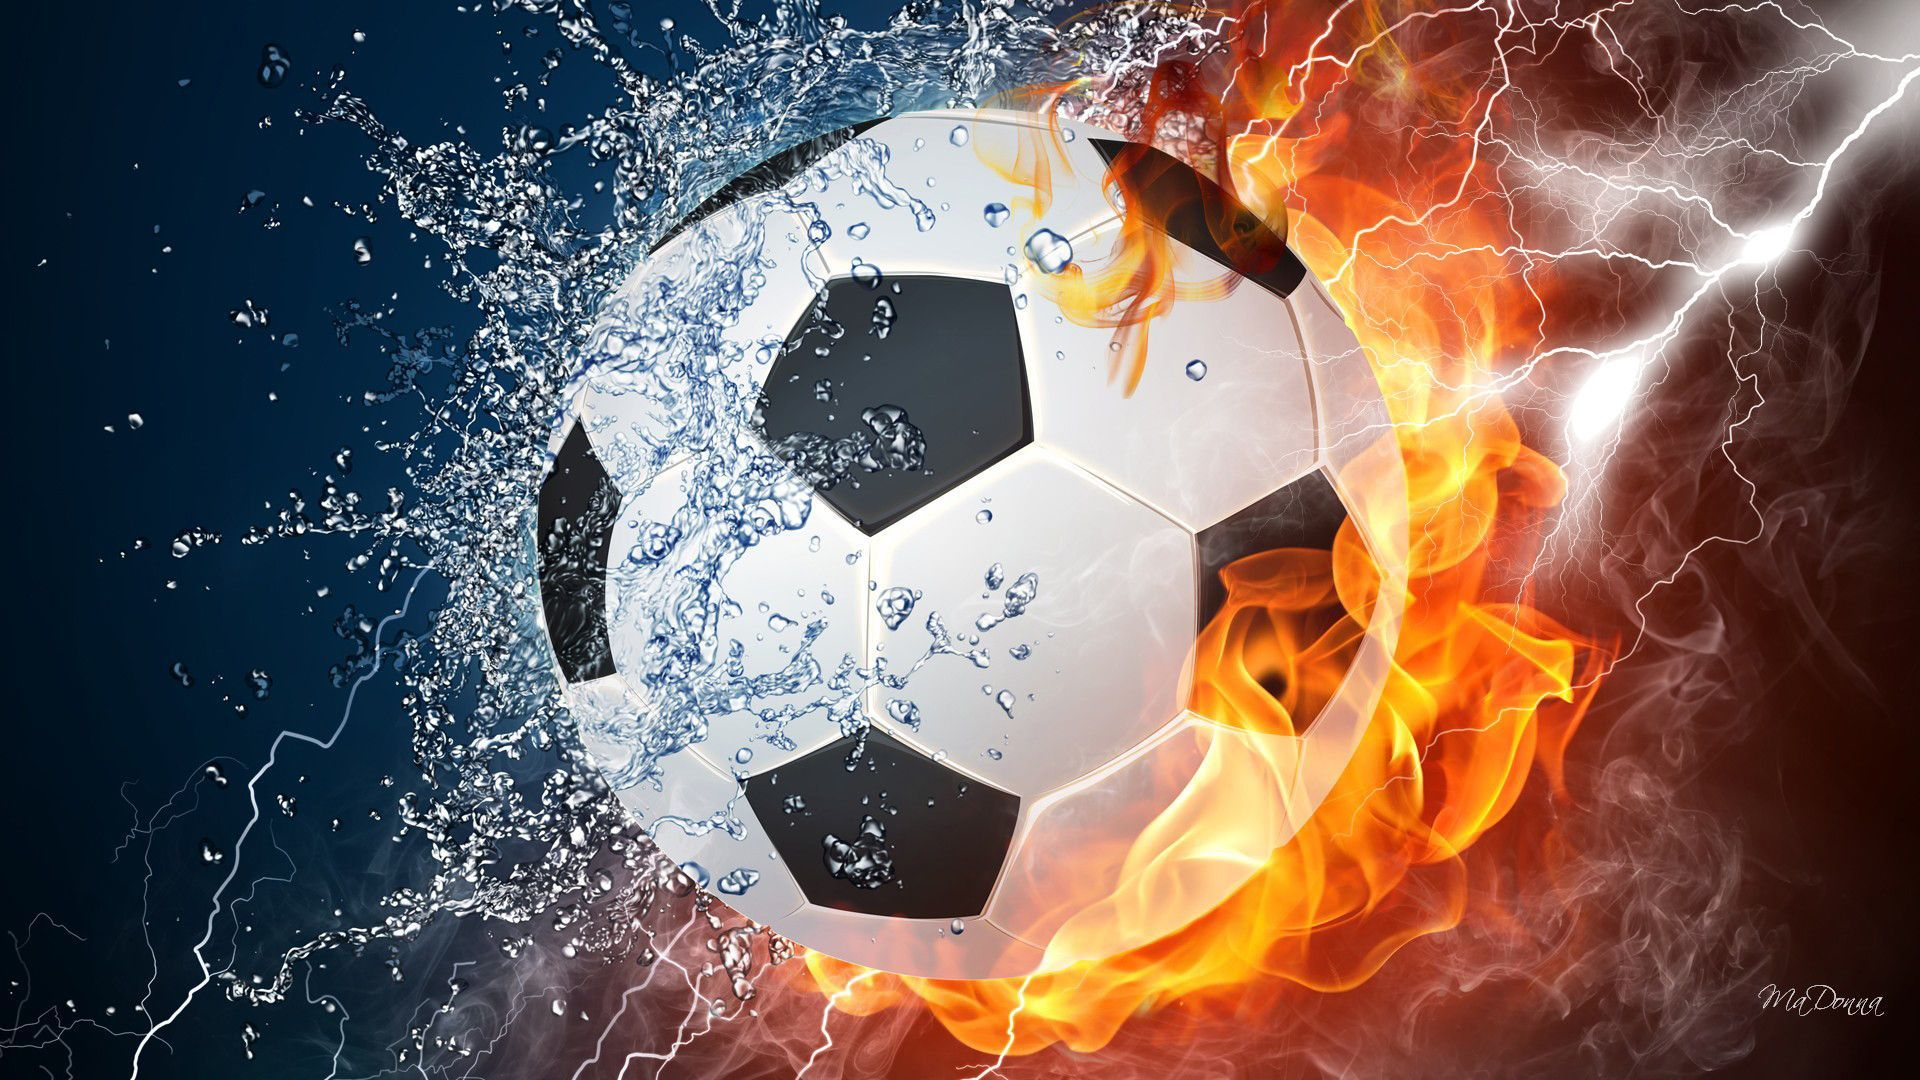 1920x1080 Cool Fire Backgrounds | Soccer ball, Soccer balls, Soccer